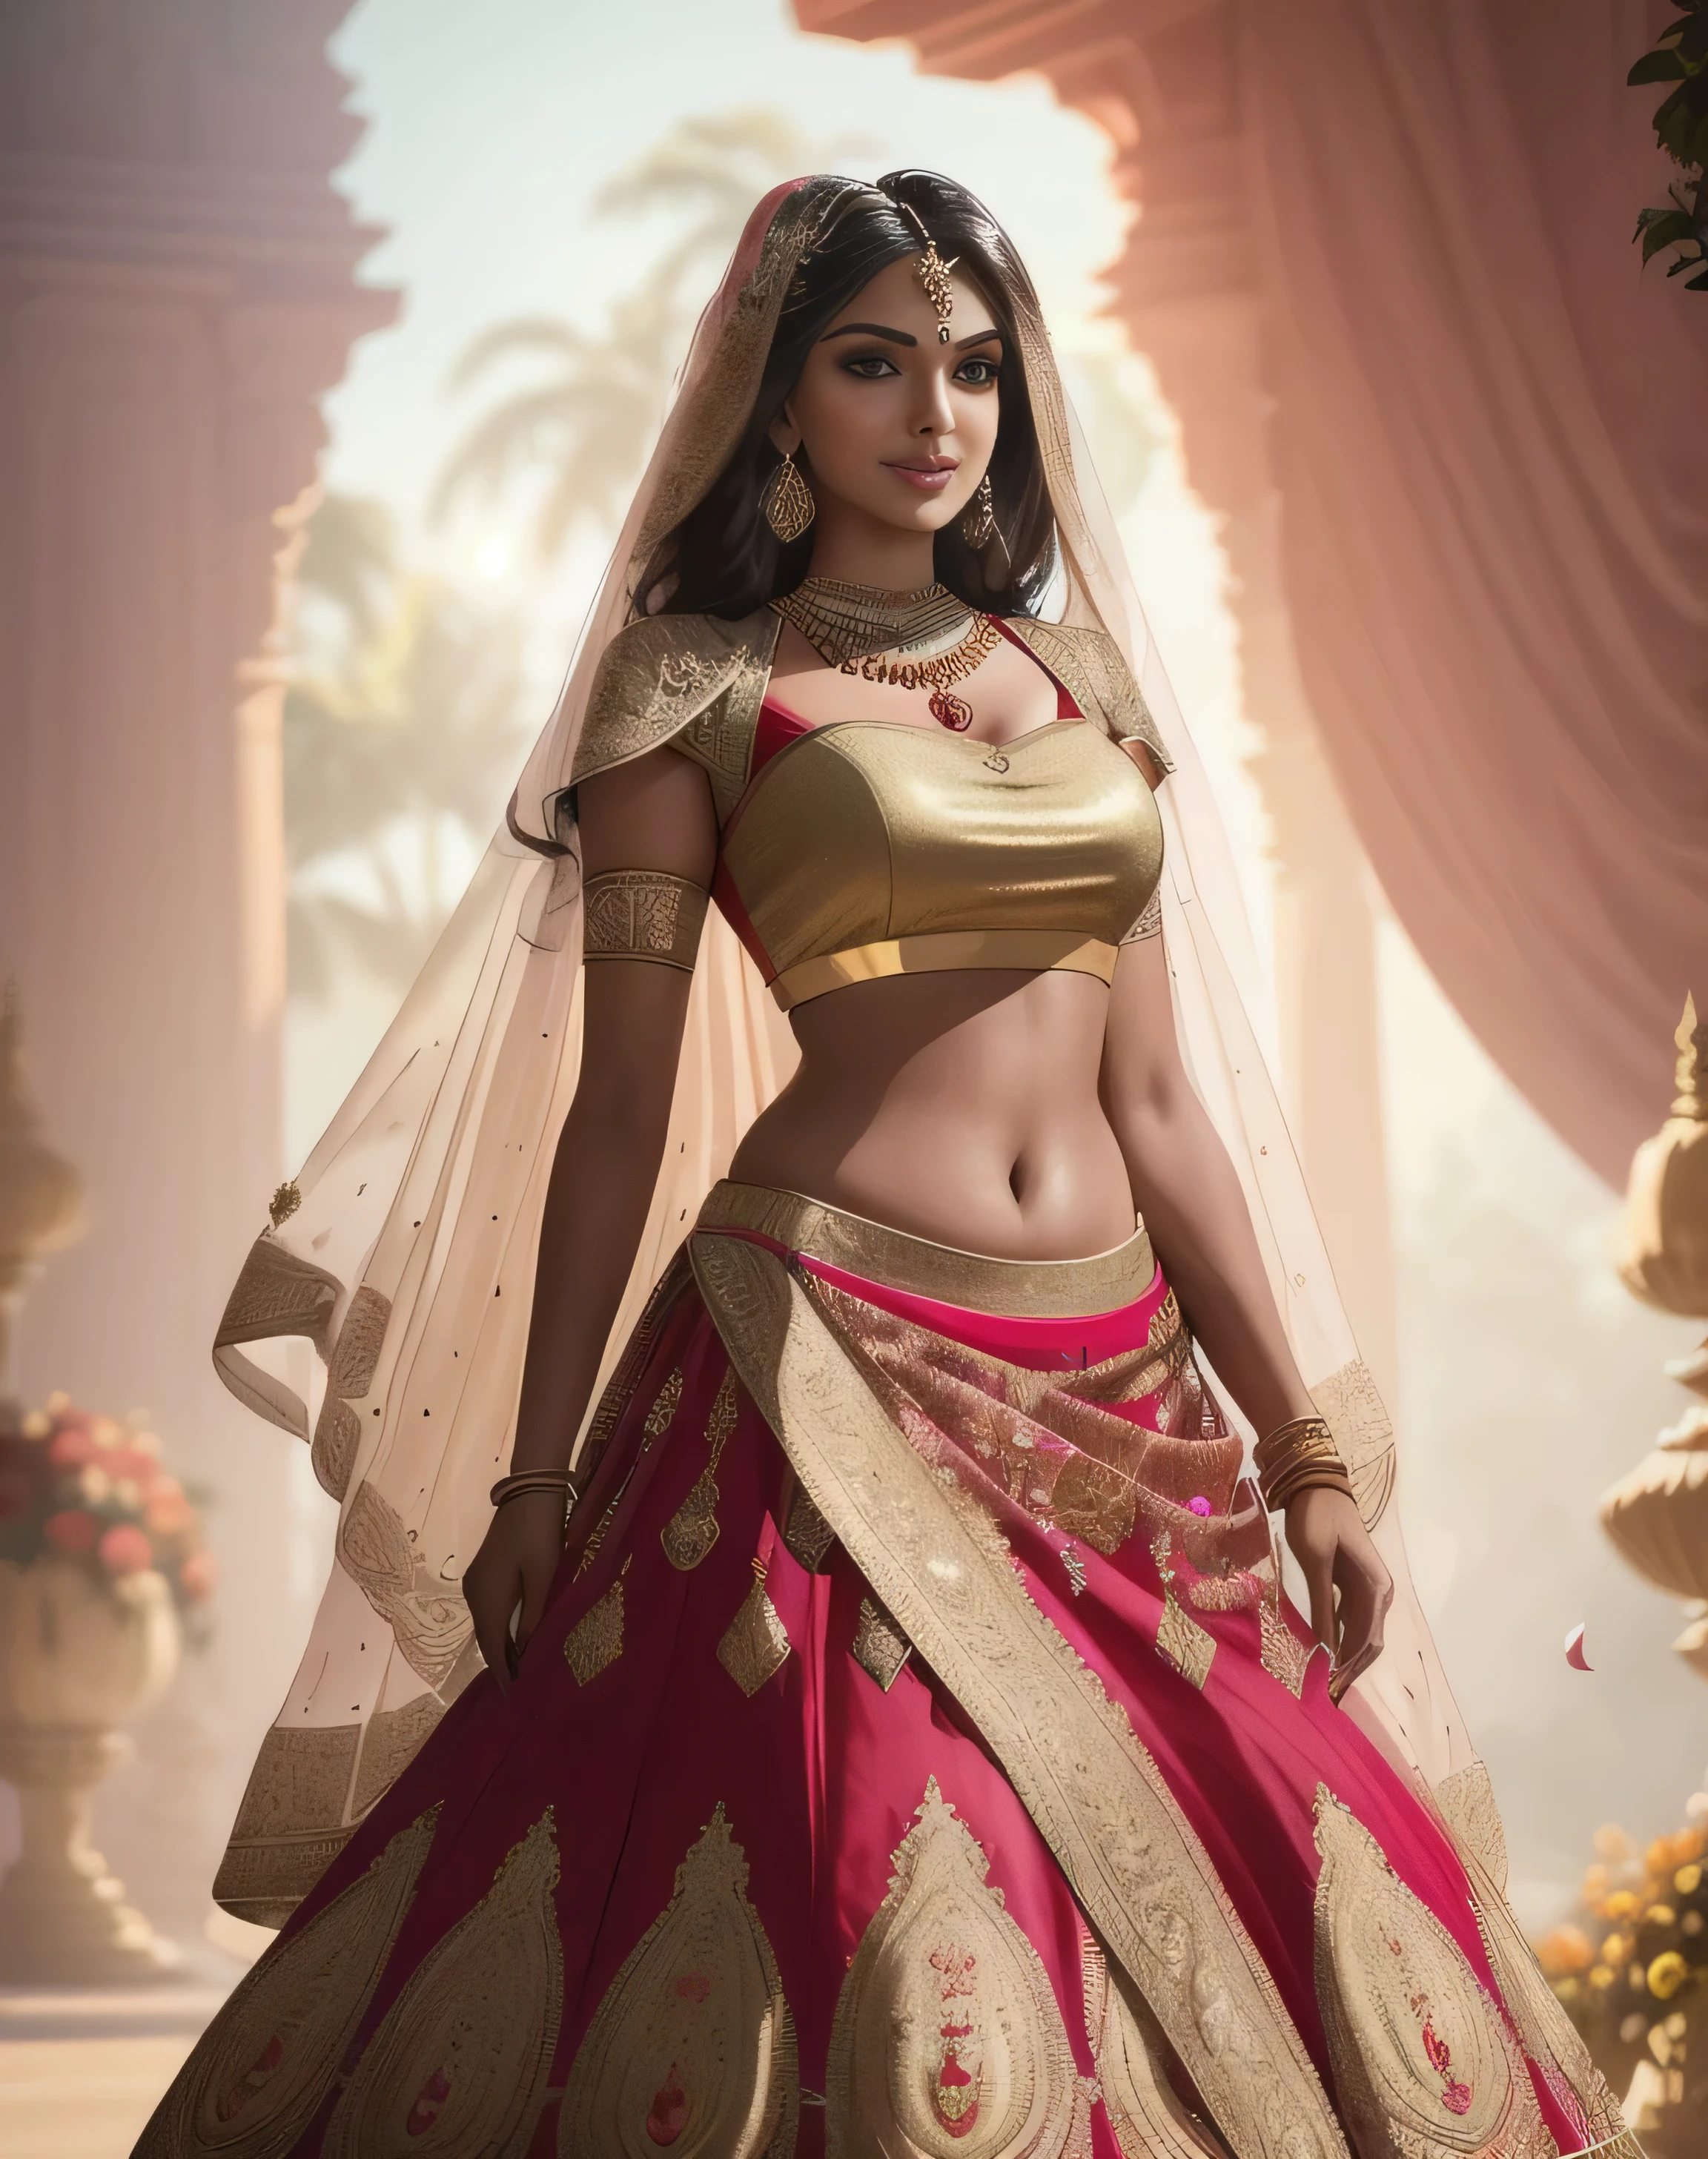 (obra-prima fotografia completa de um solo:1.2) sedutor sexy alto cheio de curvas (18 anos) Noiva princesa supermodelo indiana Amala Paul andando em (jardim real:1.3), (vestindo um deslumbrante vermelho nupcial & lehenga de ouro & blusa:1.3). pura dupatta, maximalismo, (decorações de flores de casamento:1.3), (maquiagem indiana & joia:1.2) cabelo castanho longo trançado com mechas,, vivaz, olhar lascivo, entusiasmado (lindos olhos detalhados:1.1) , (sorriso brilhante e sedutor:1.2), (luz intensa e dramática da tarde:1.4), retroiluminado, luz principal, luz de aro, raios de luz, Altamente detalhado, tendências no artstation, respingos de tinta, cor rica, retrato abstrato, por Atey Ghailan